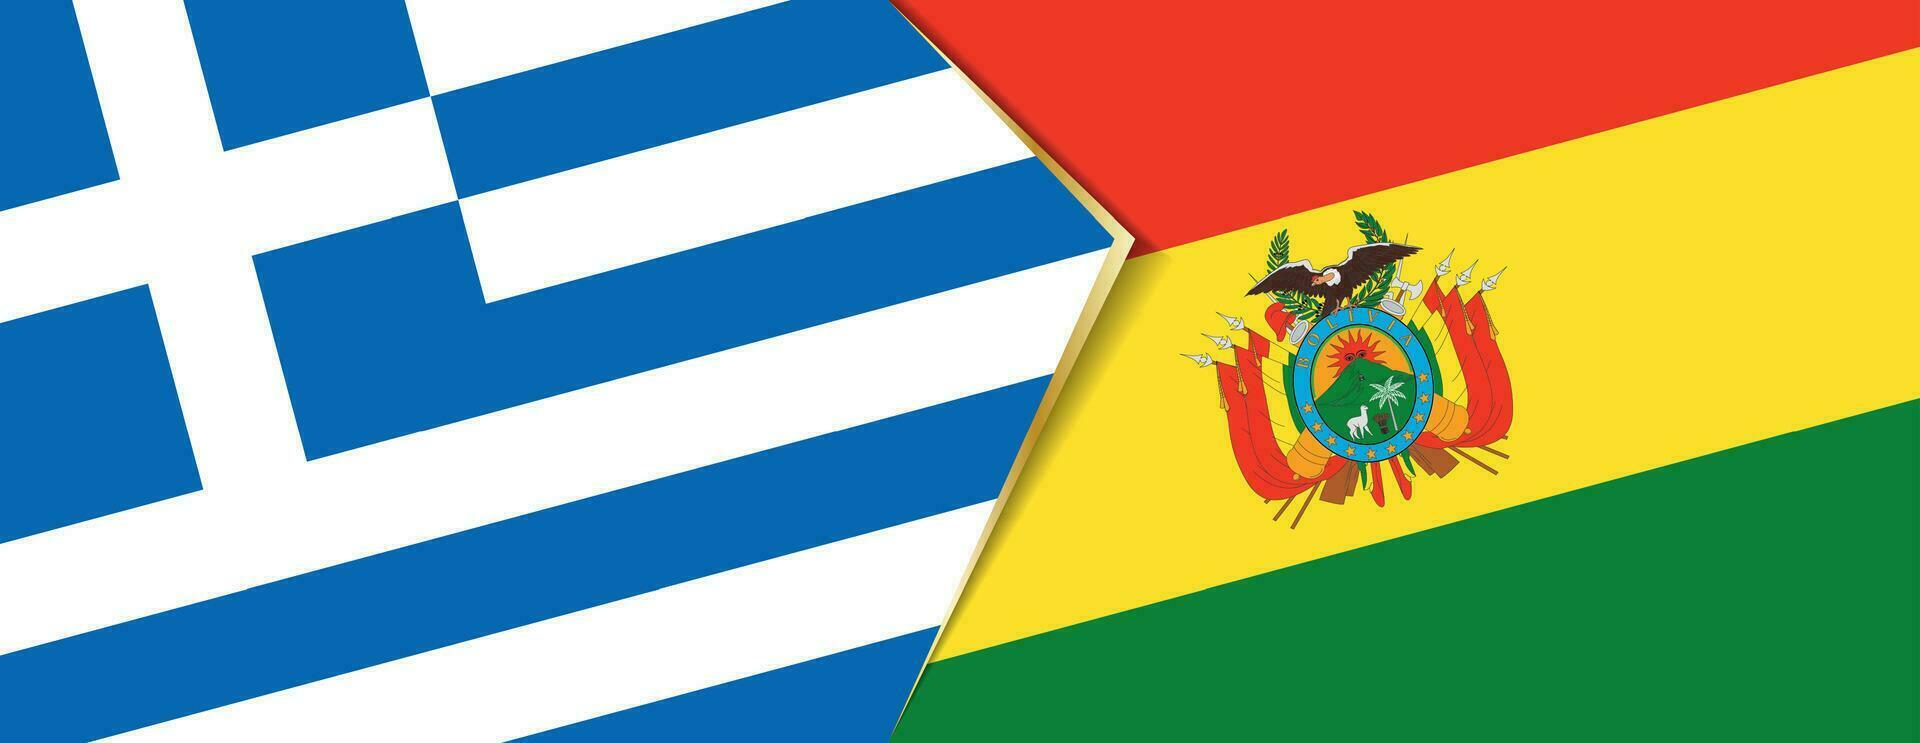 grekland och bolivia flaggor, två vektor flaggor.